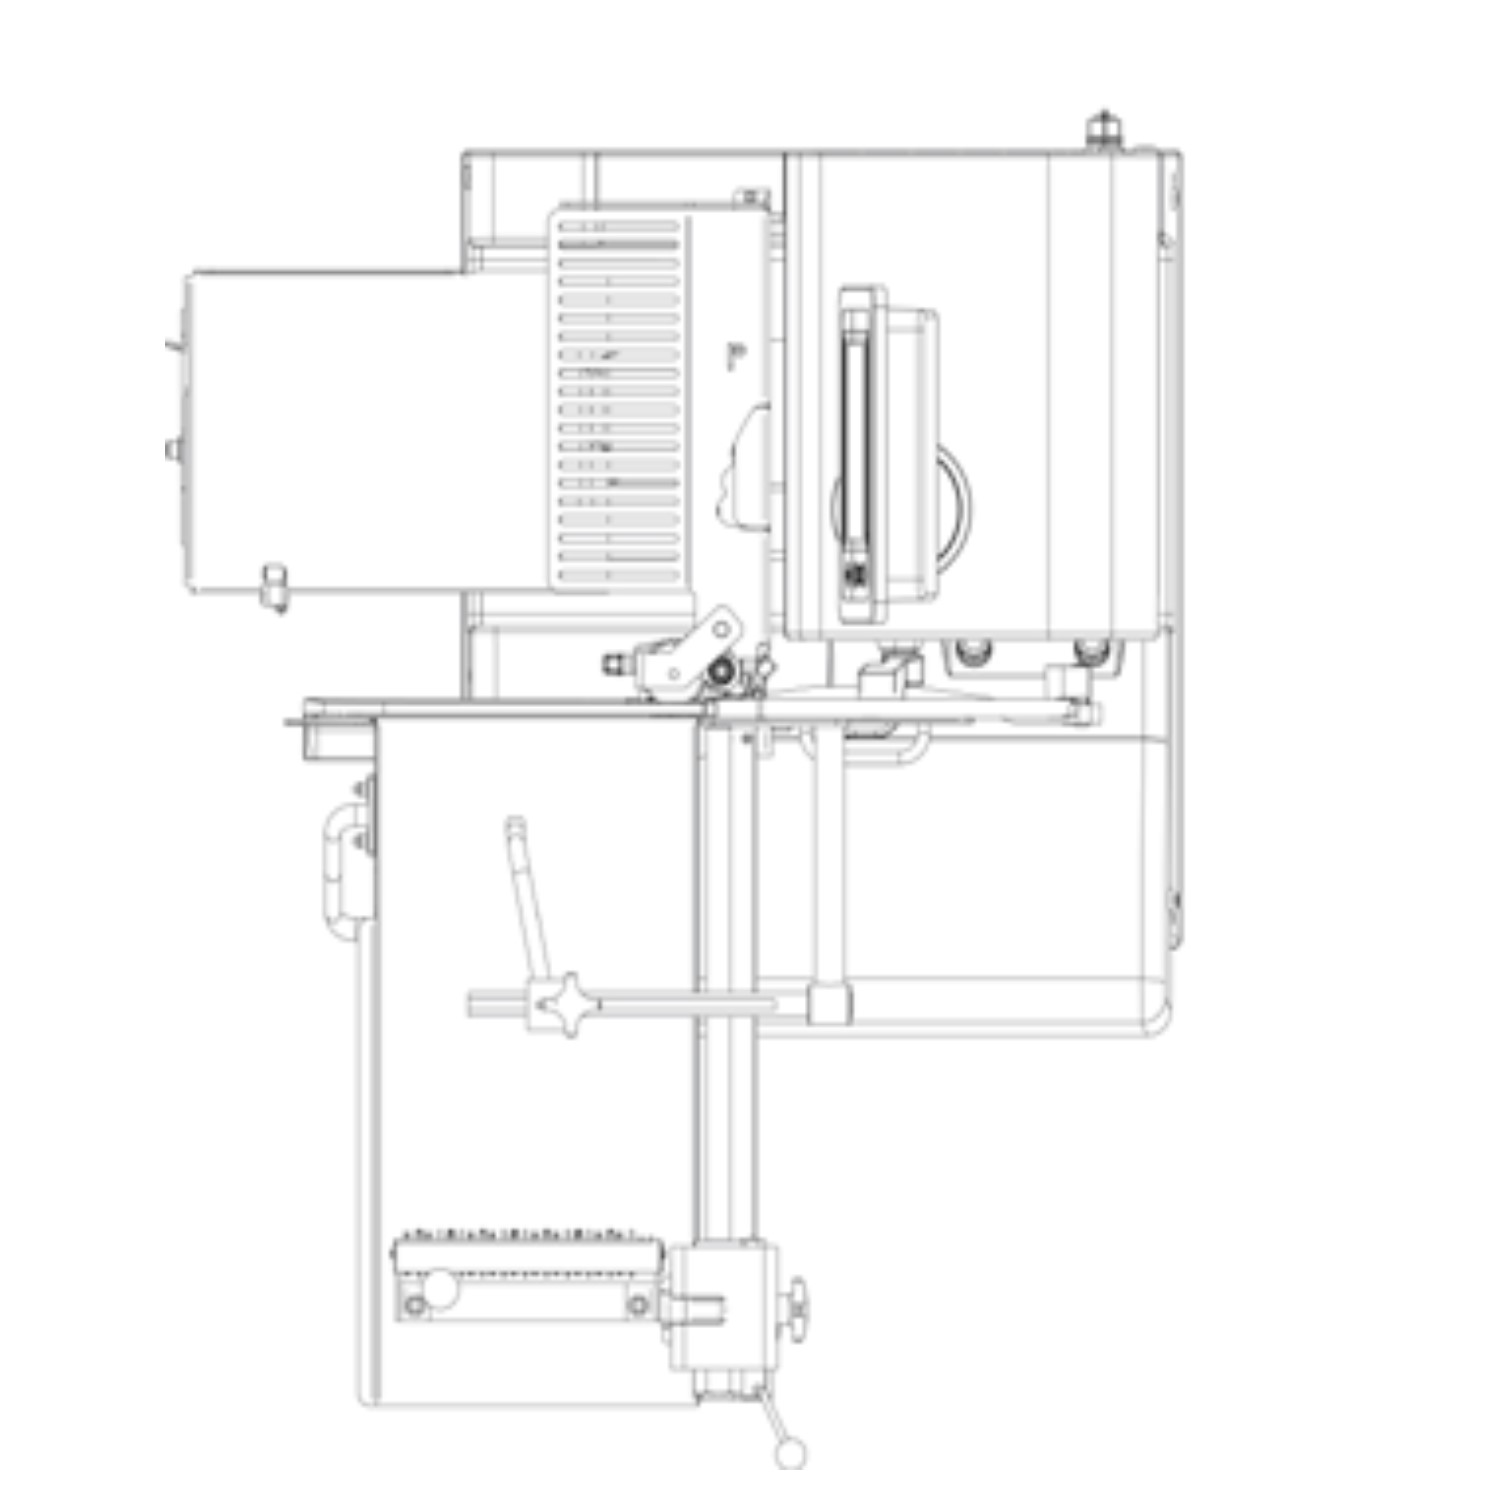 Bizerba VSI F Otomatik Dilimleme Makinası Dikey -11.jpg (102 KB)